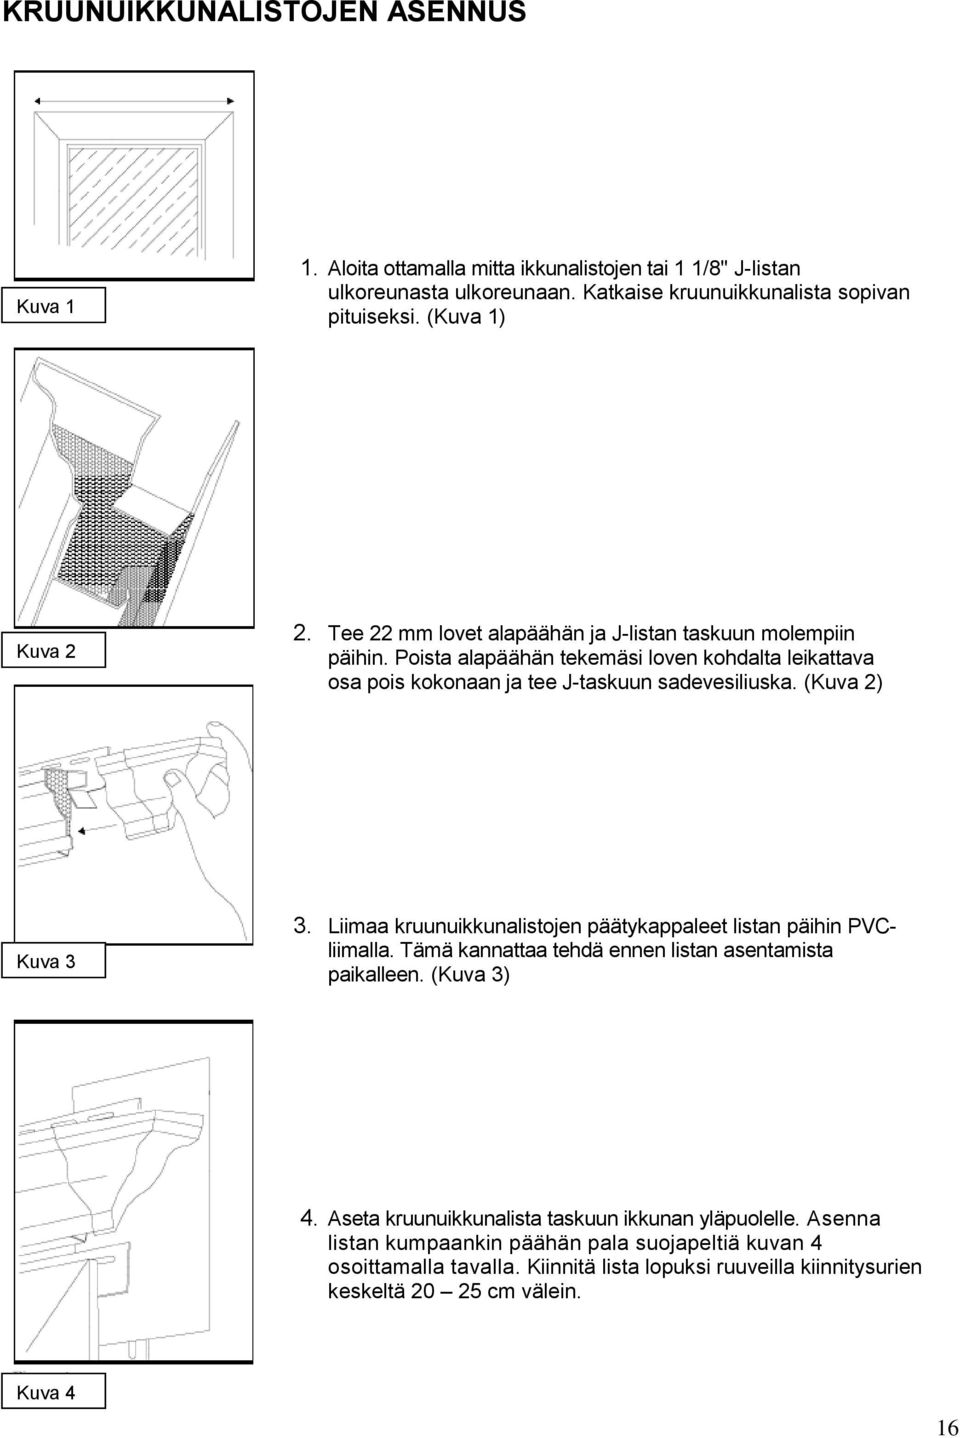 Poista alapäähän tekemäsi loven kohdalta leikattava osa pois kokonaan ja tee J-taskuun sadevesiliuska. (Kuva 2) Kuva 3 3.